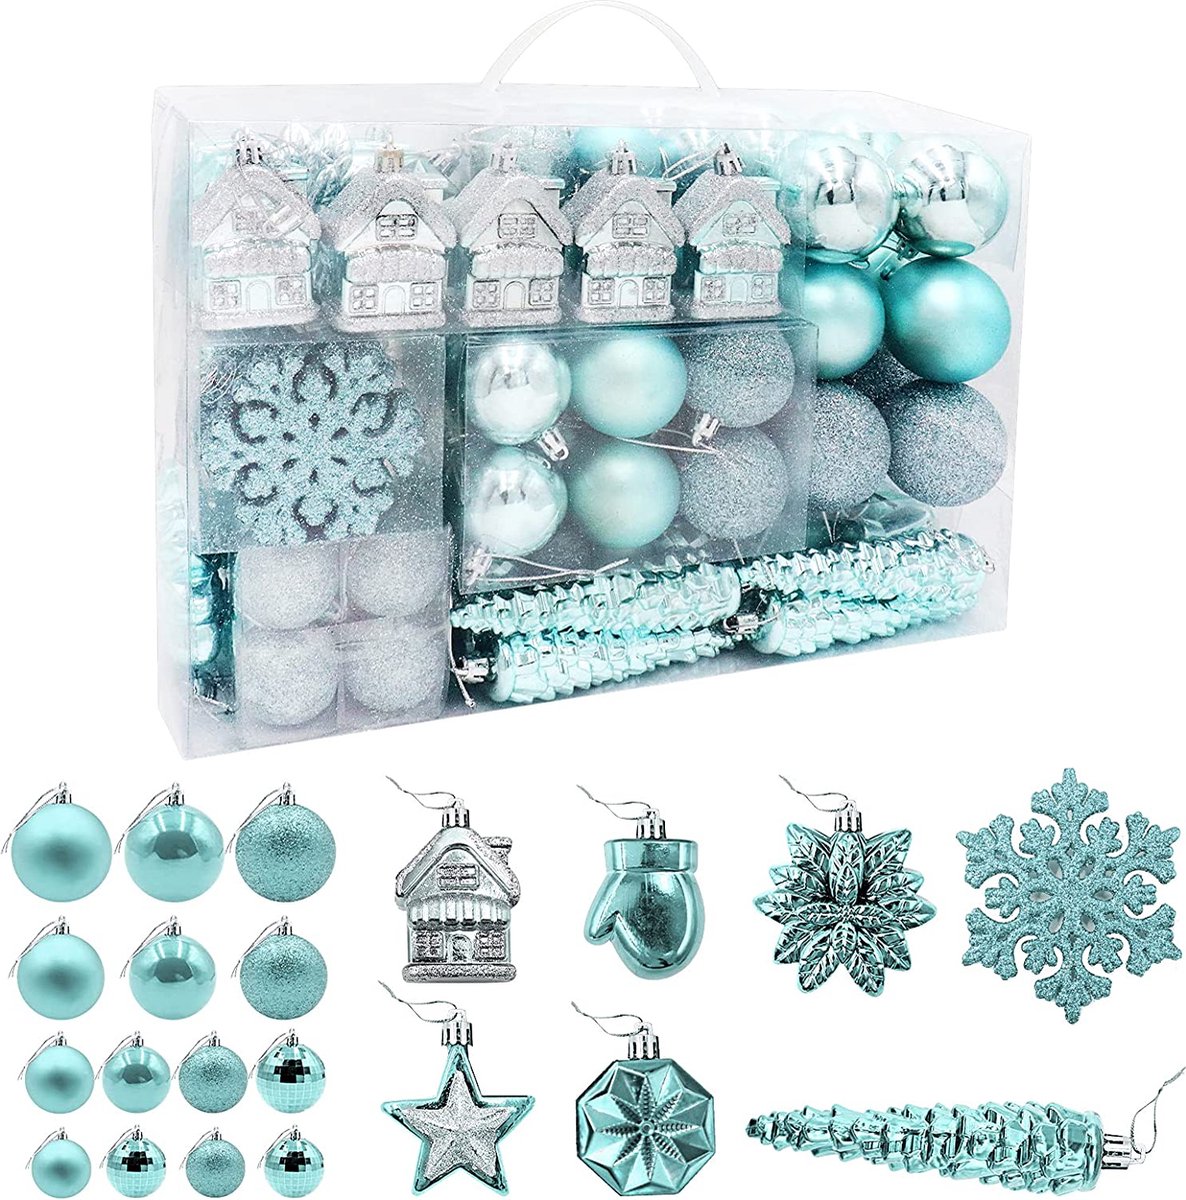 113 kerstballen, kerstboomversiering, ophanging, kerstballen voor de kerstboom, kerstboomversiering, kerstballen (blauw)